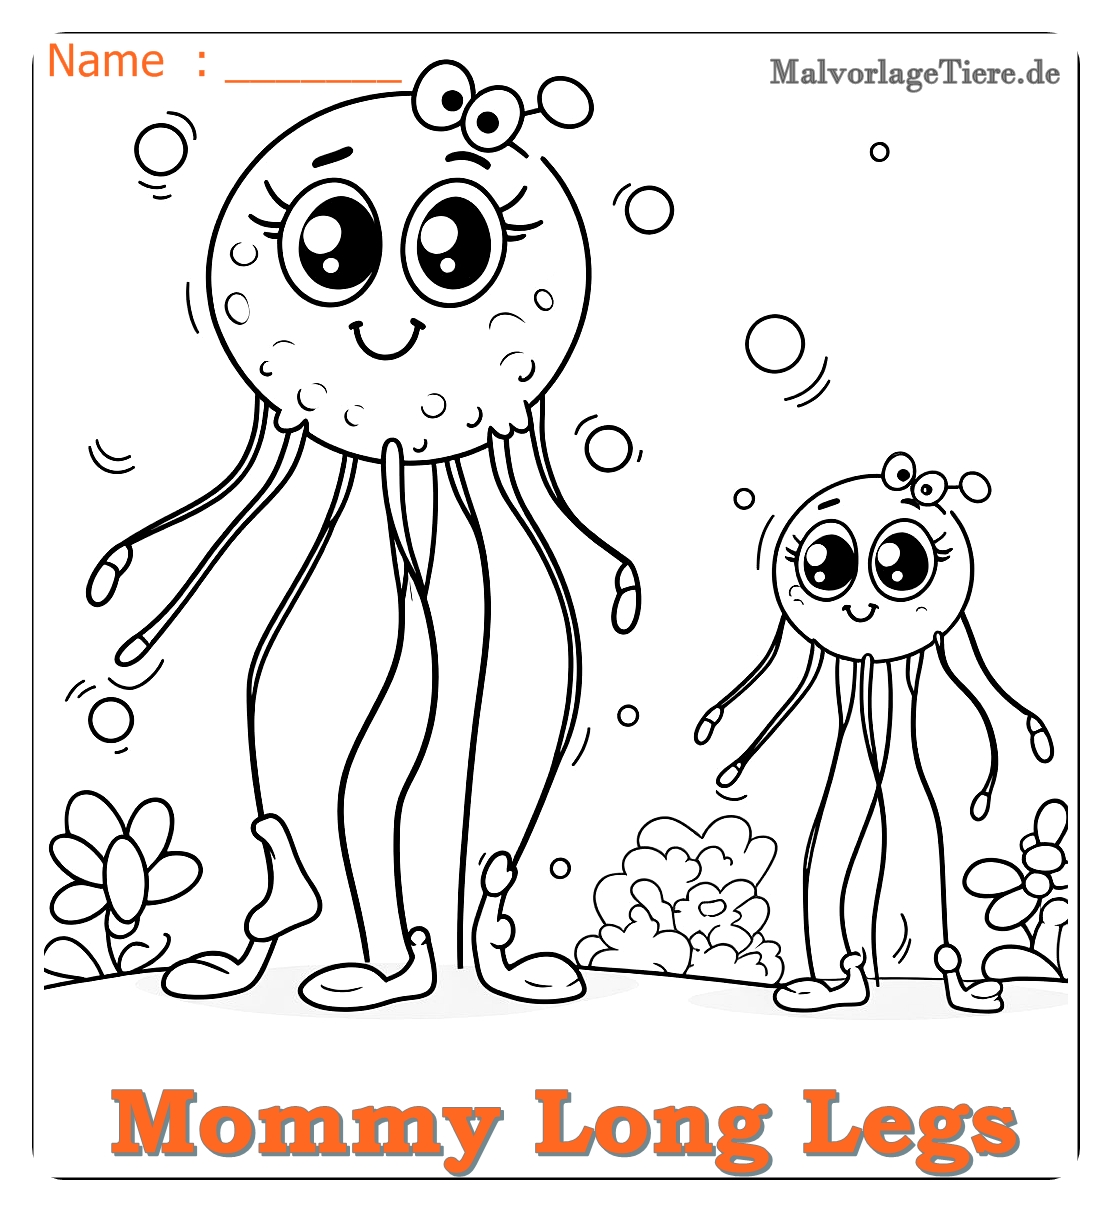 mommy long legs ausmalbilder 07 by malvorlagetiere.de